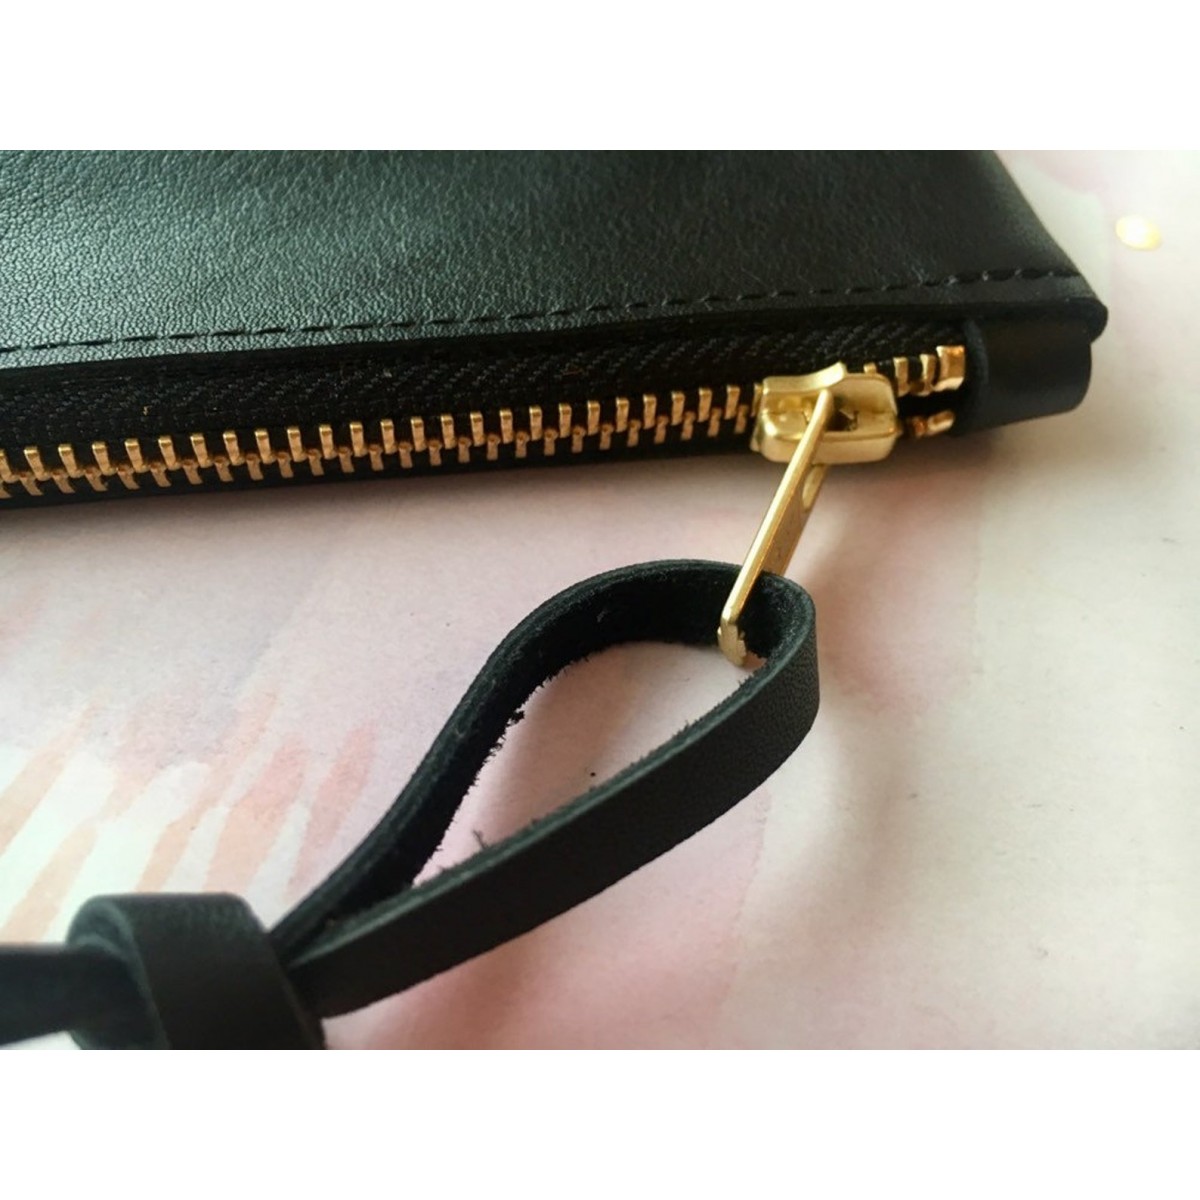 BSaite / Kleines schwarzes Leder Portemonnaie / kleine Leder Geldbörse / Reißverschluss Tasche schwarz / Geschenk für Freundin